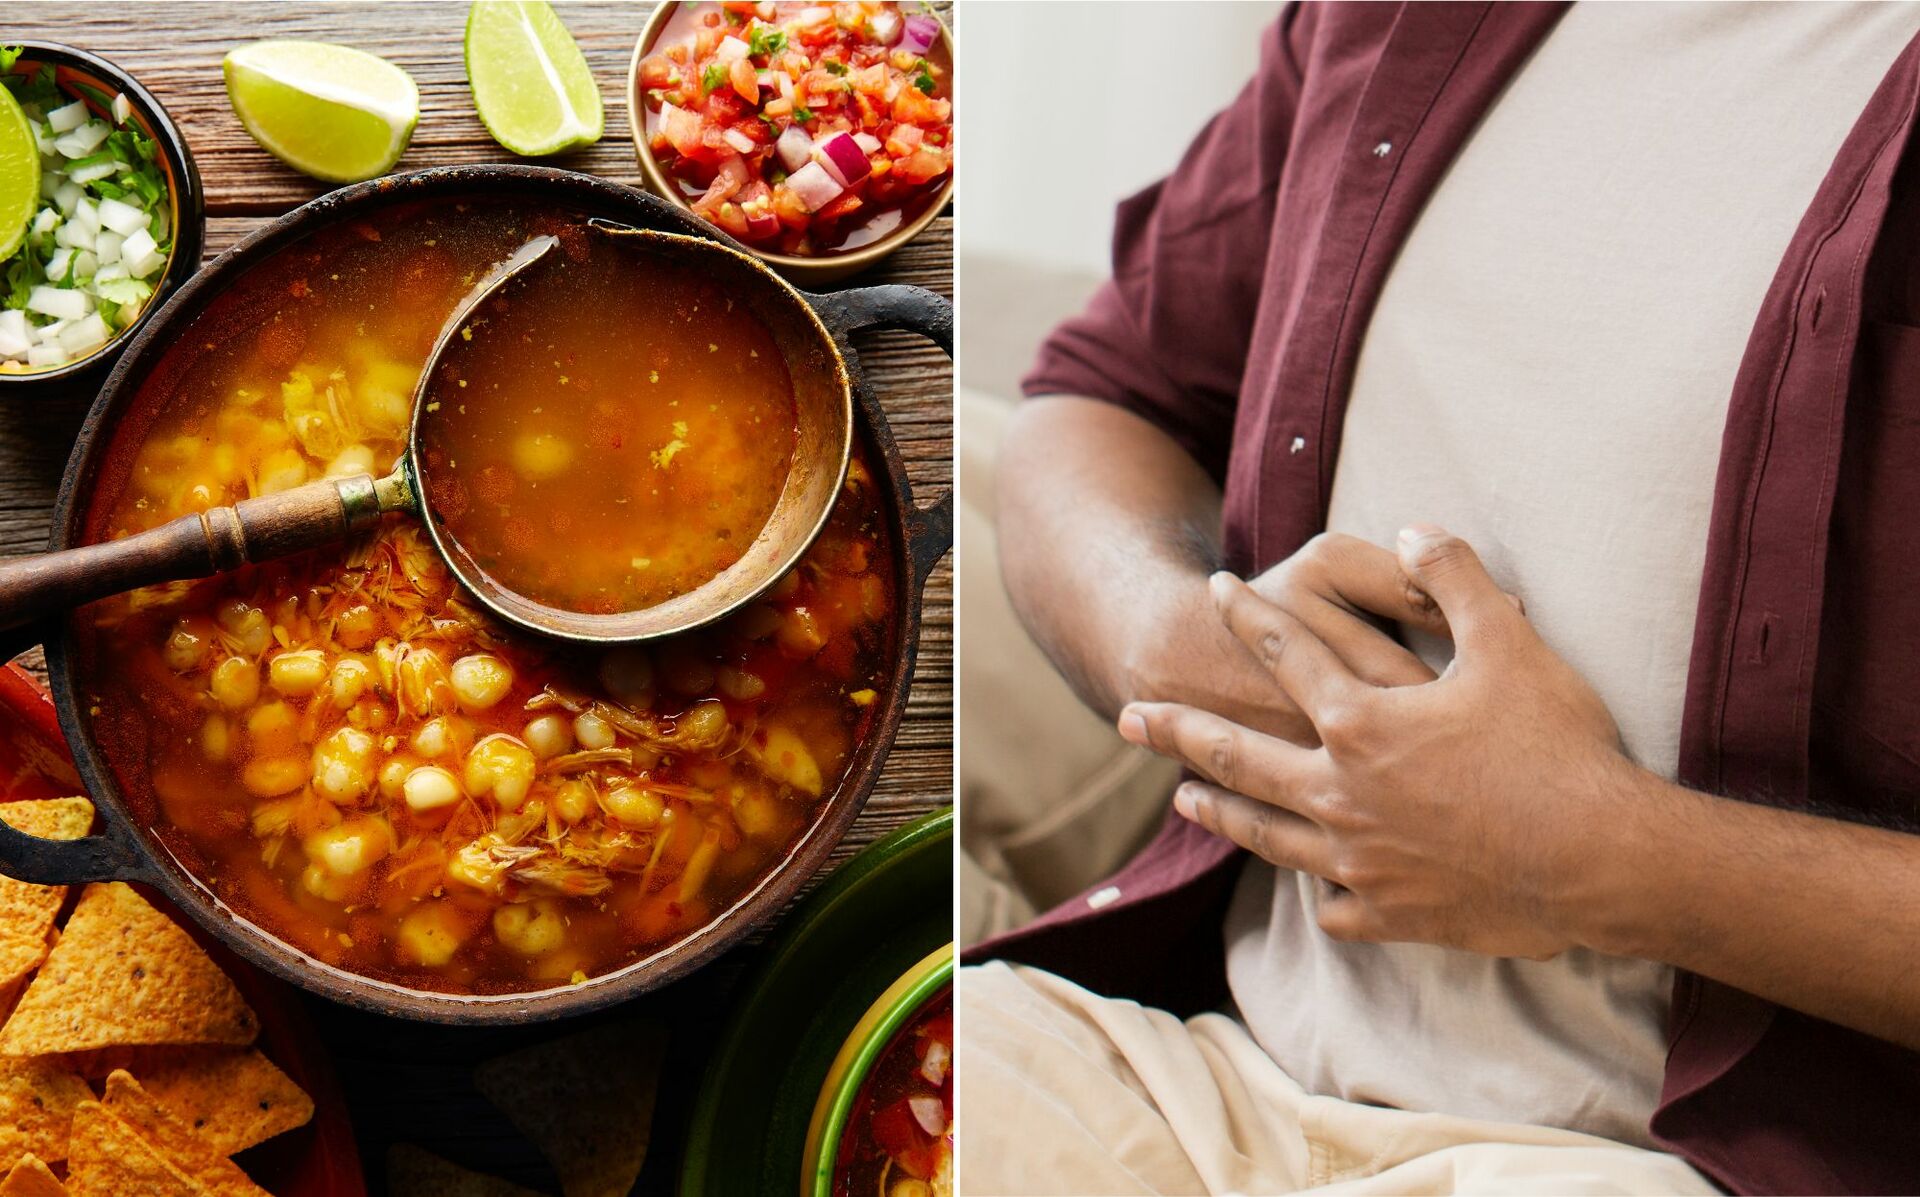 Antojitos como los tacos, la birria, los tamales y el tradicional pozole, entre otros, siguen estando presentes en la dieta de muchos mexicanos, algunos de los cuales pueden experimentar malestares estomacales.